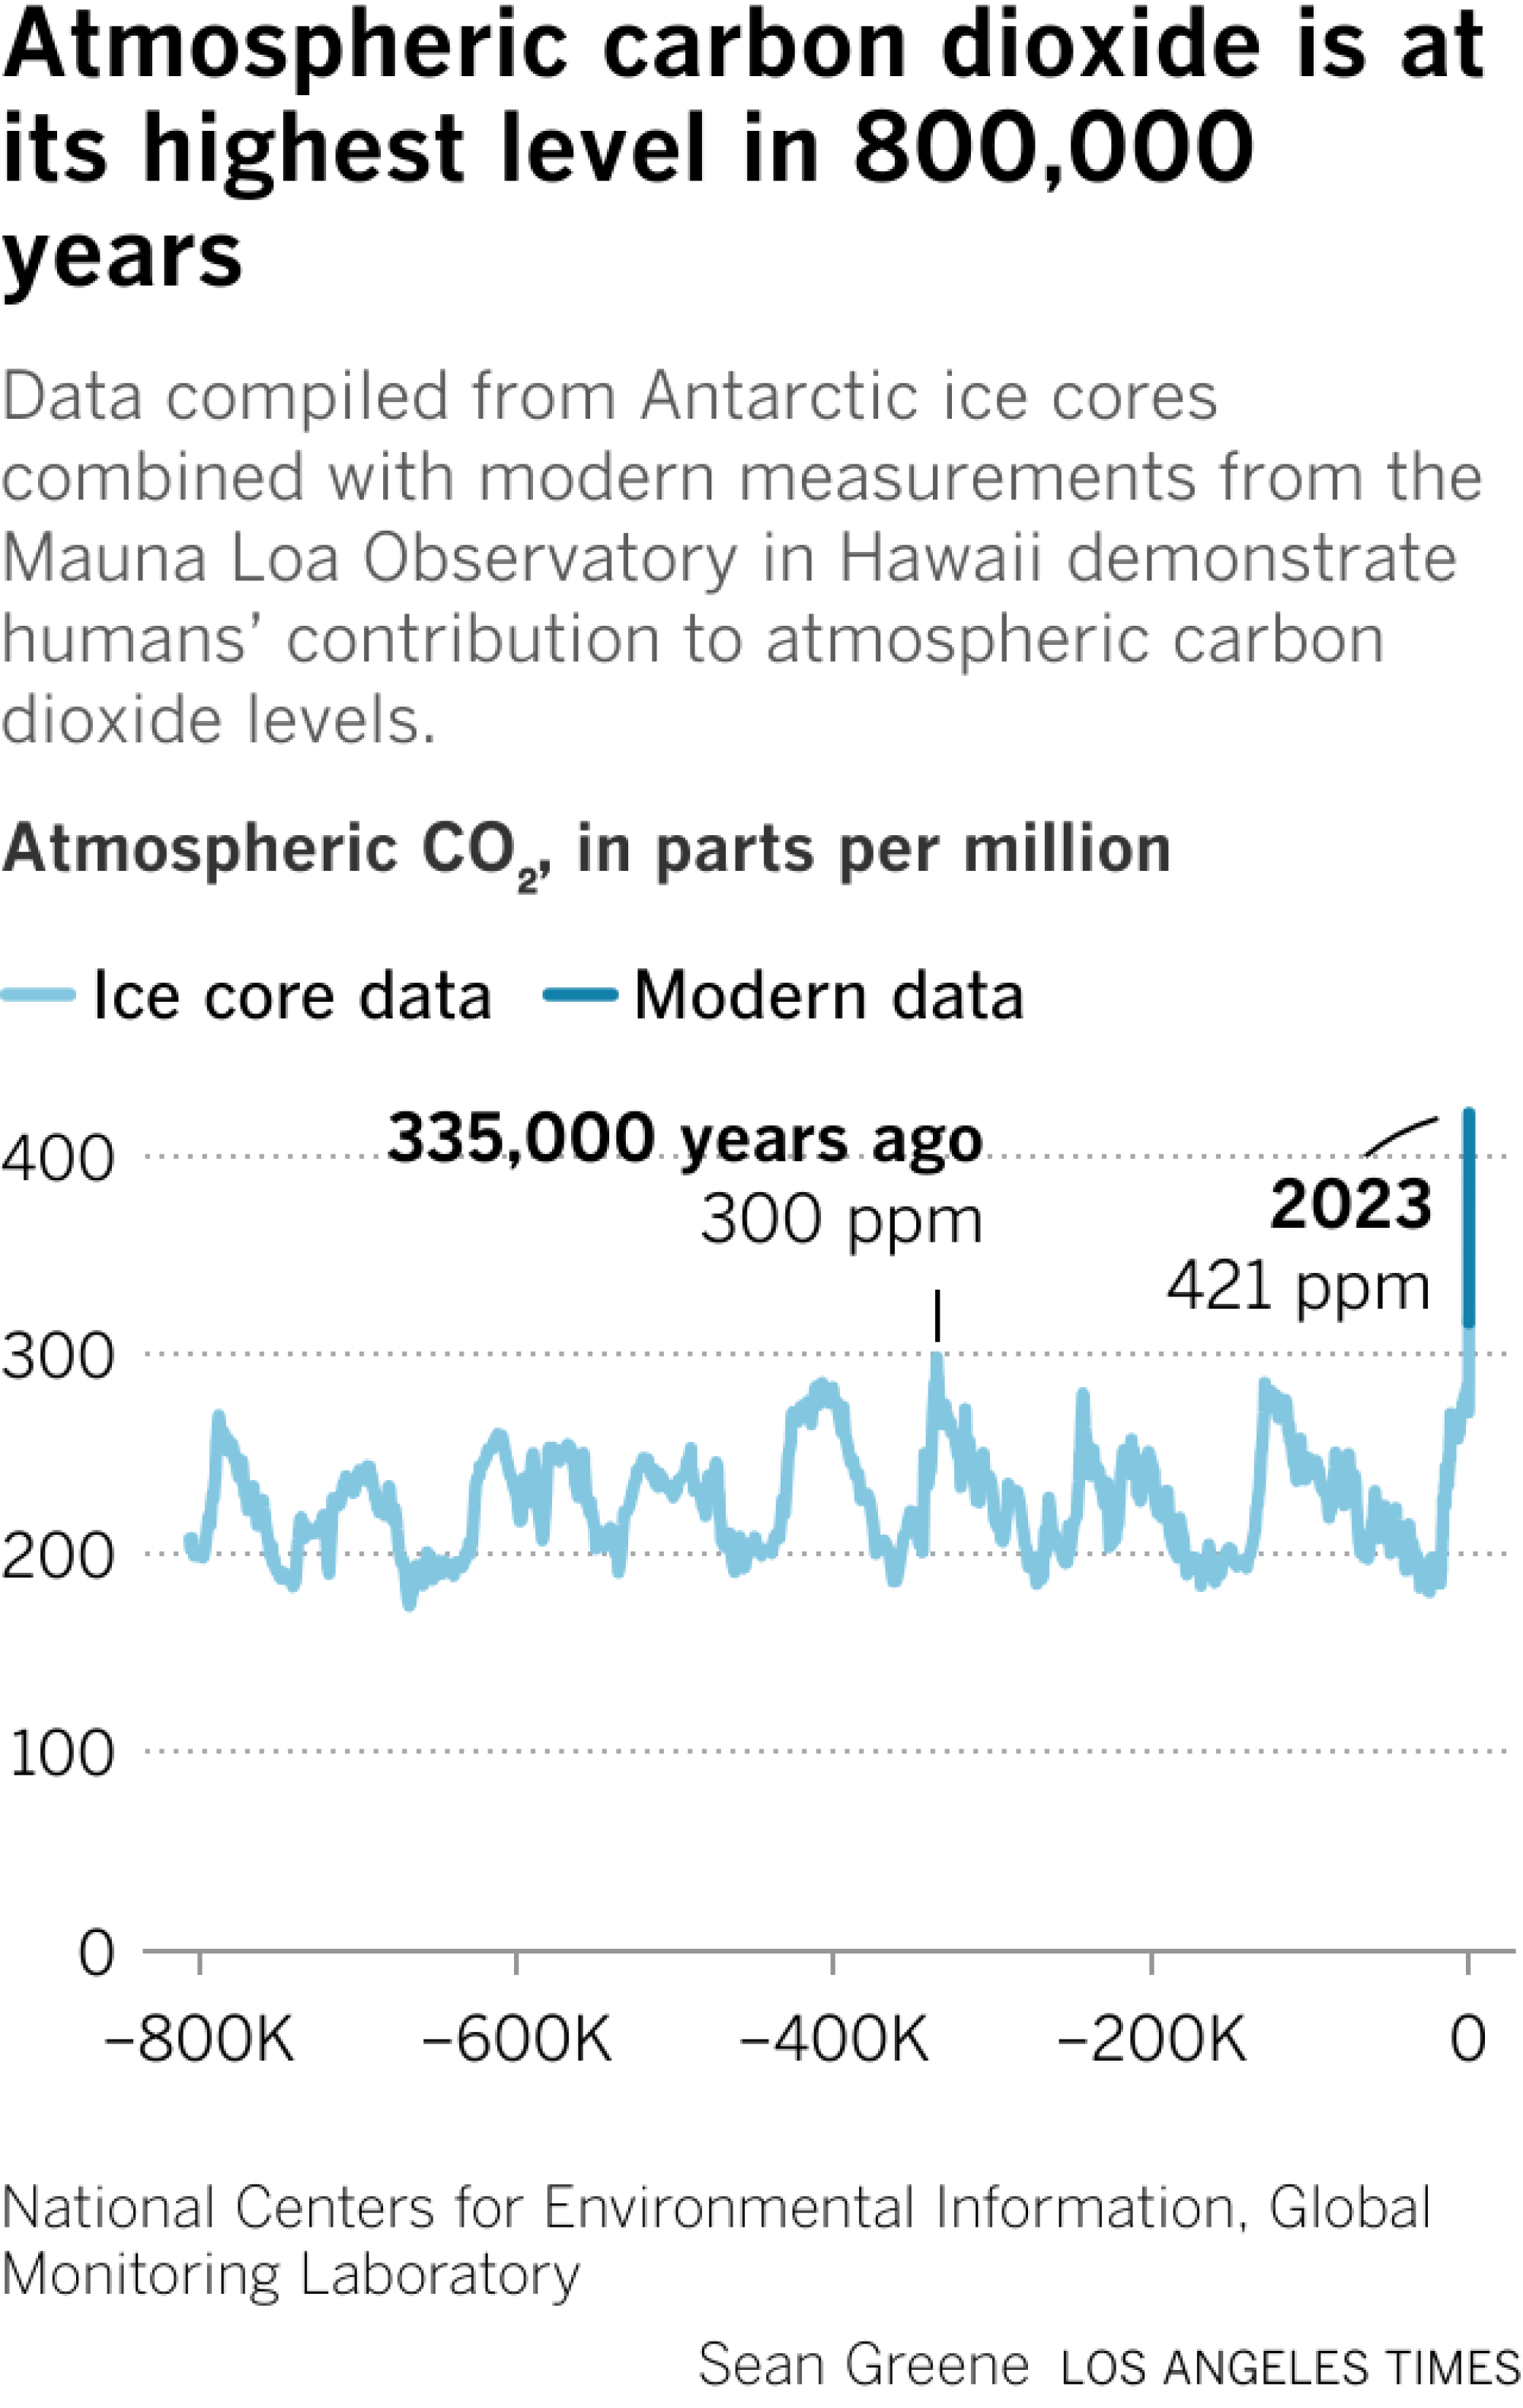 这张折线图显示了过去 80 万年中大气中的二氧化碳水平。二氧化碳上次达到峰值是在 33.5 万年前，浓度为 300 ppm。在过去的几十年里，浓度飙升至 421 ppm。